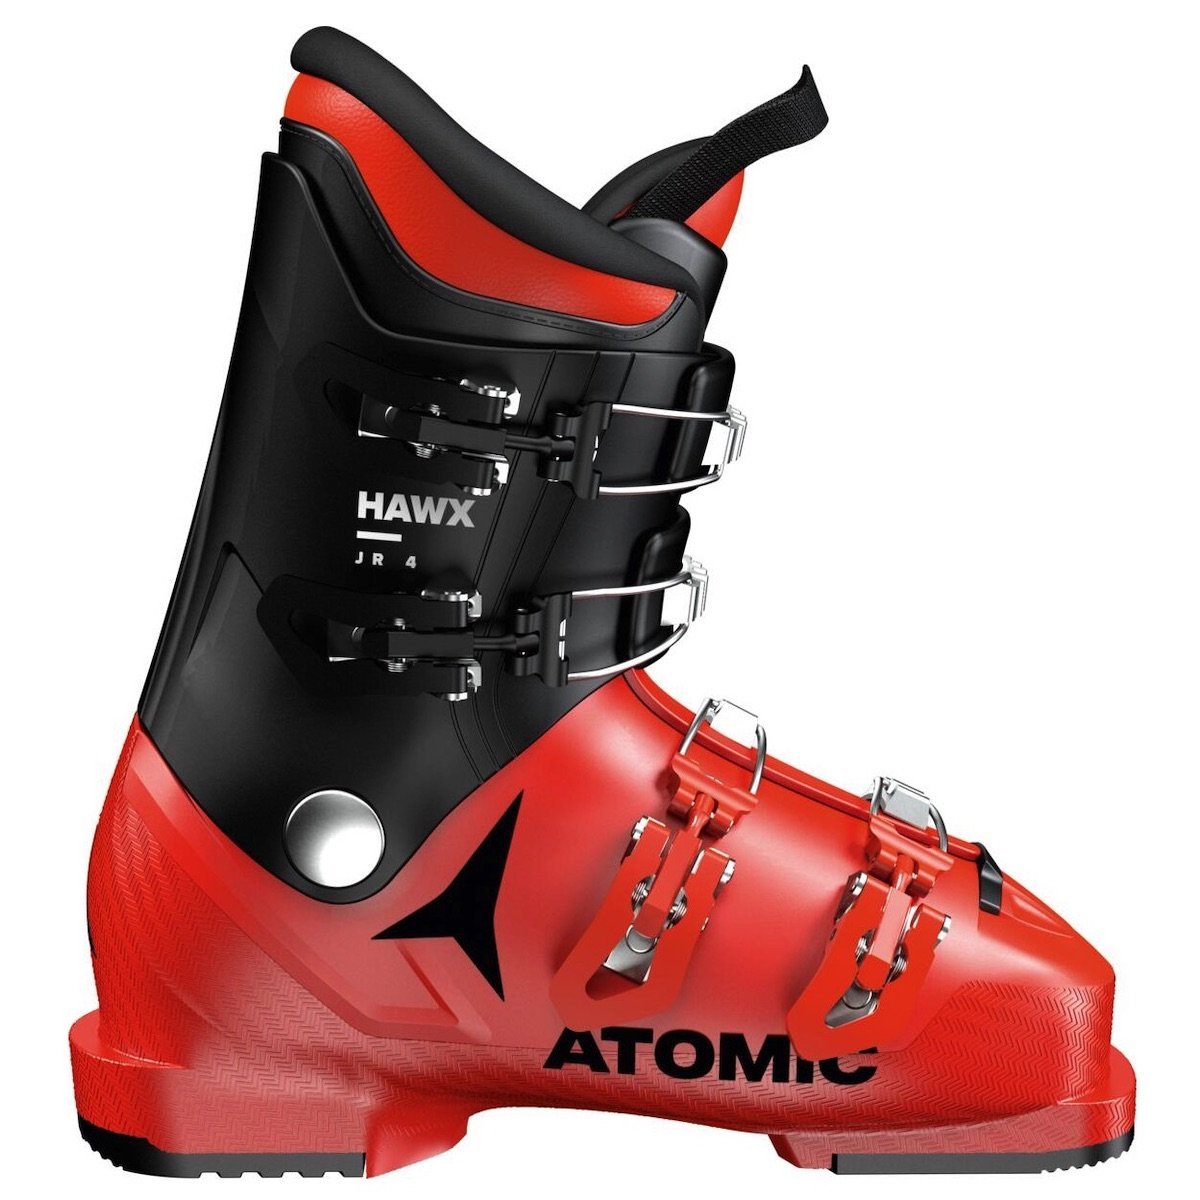 Lyžiarske topánky Atomic Hawx Jr 4 - červená/čierna